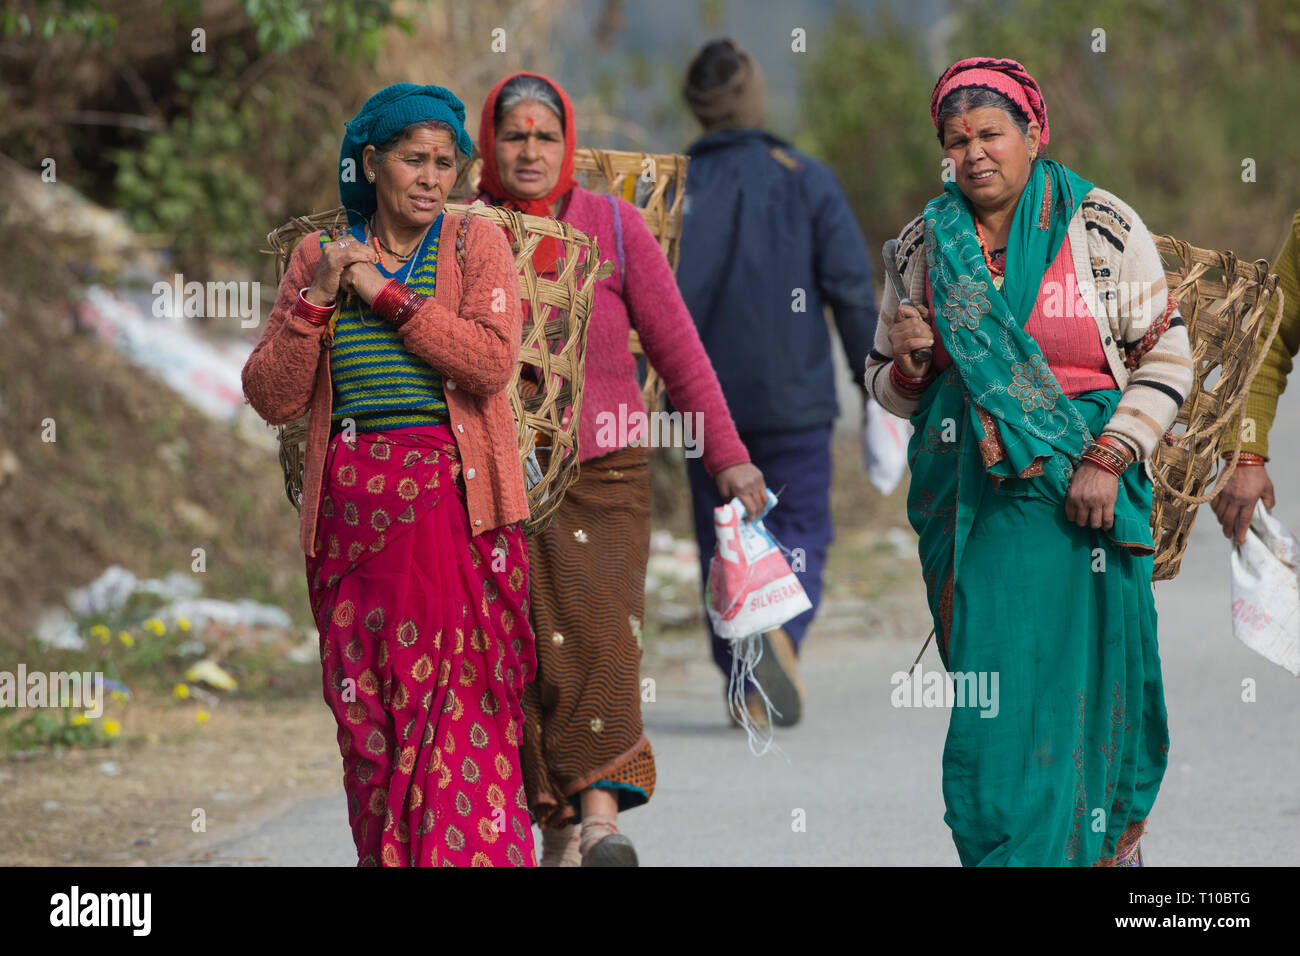 Drei Frauen, die gestrickte Wolle Kleidung und Kopfbedeckung. Bindi, tika or​ Tikka, Markierung auf der Stirn. Zu Fuß zur Arbeit, leer geflochtenen Körben auf dem Rücken zu Ernten in der nahe gelegenen Felder. Im Norden Indiens. Winter. Stockfoto